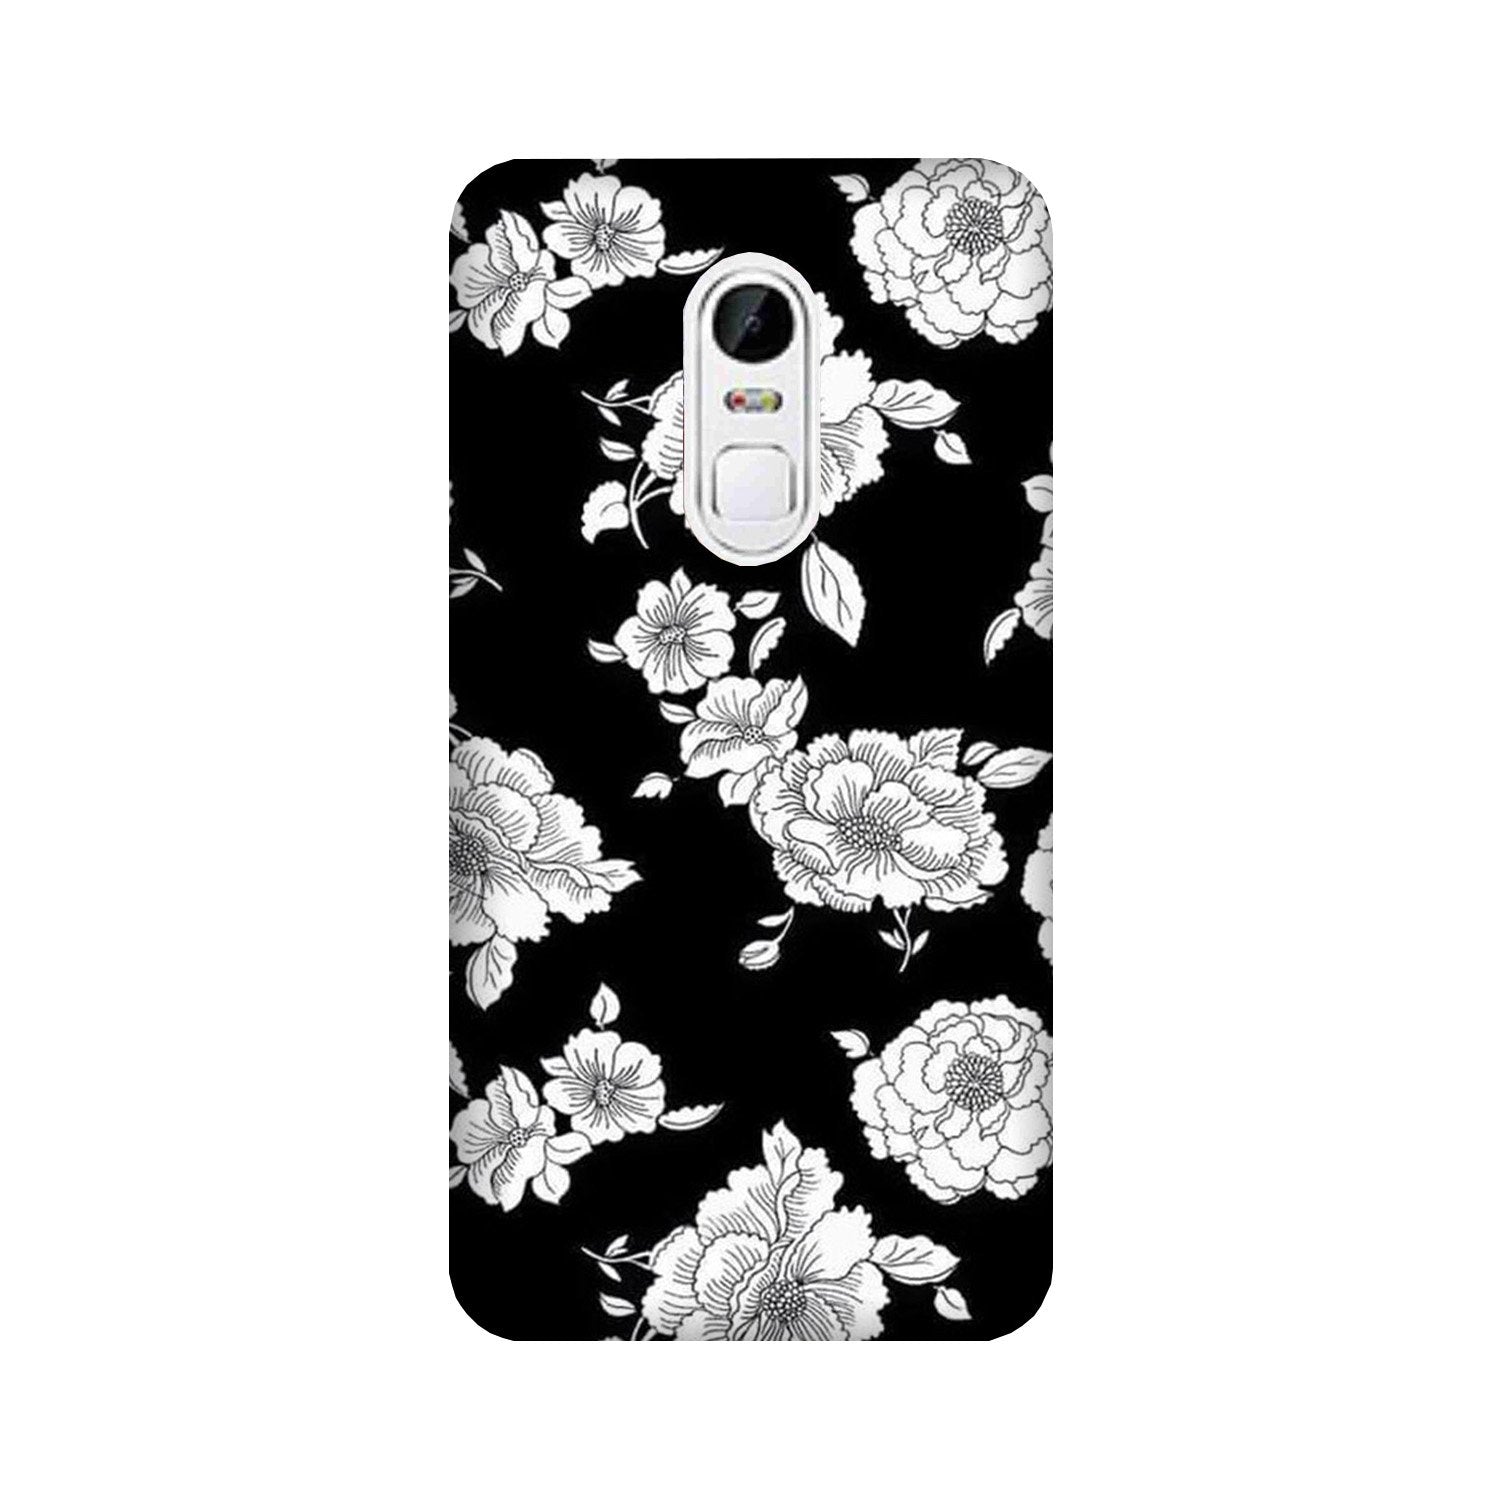 White flowers Black Background Case for Lenovo Vibe X3